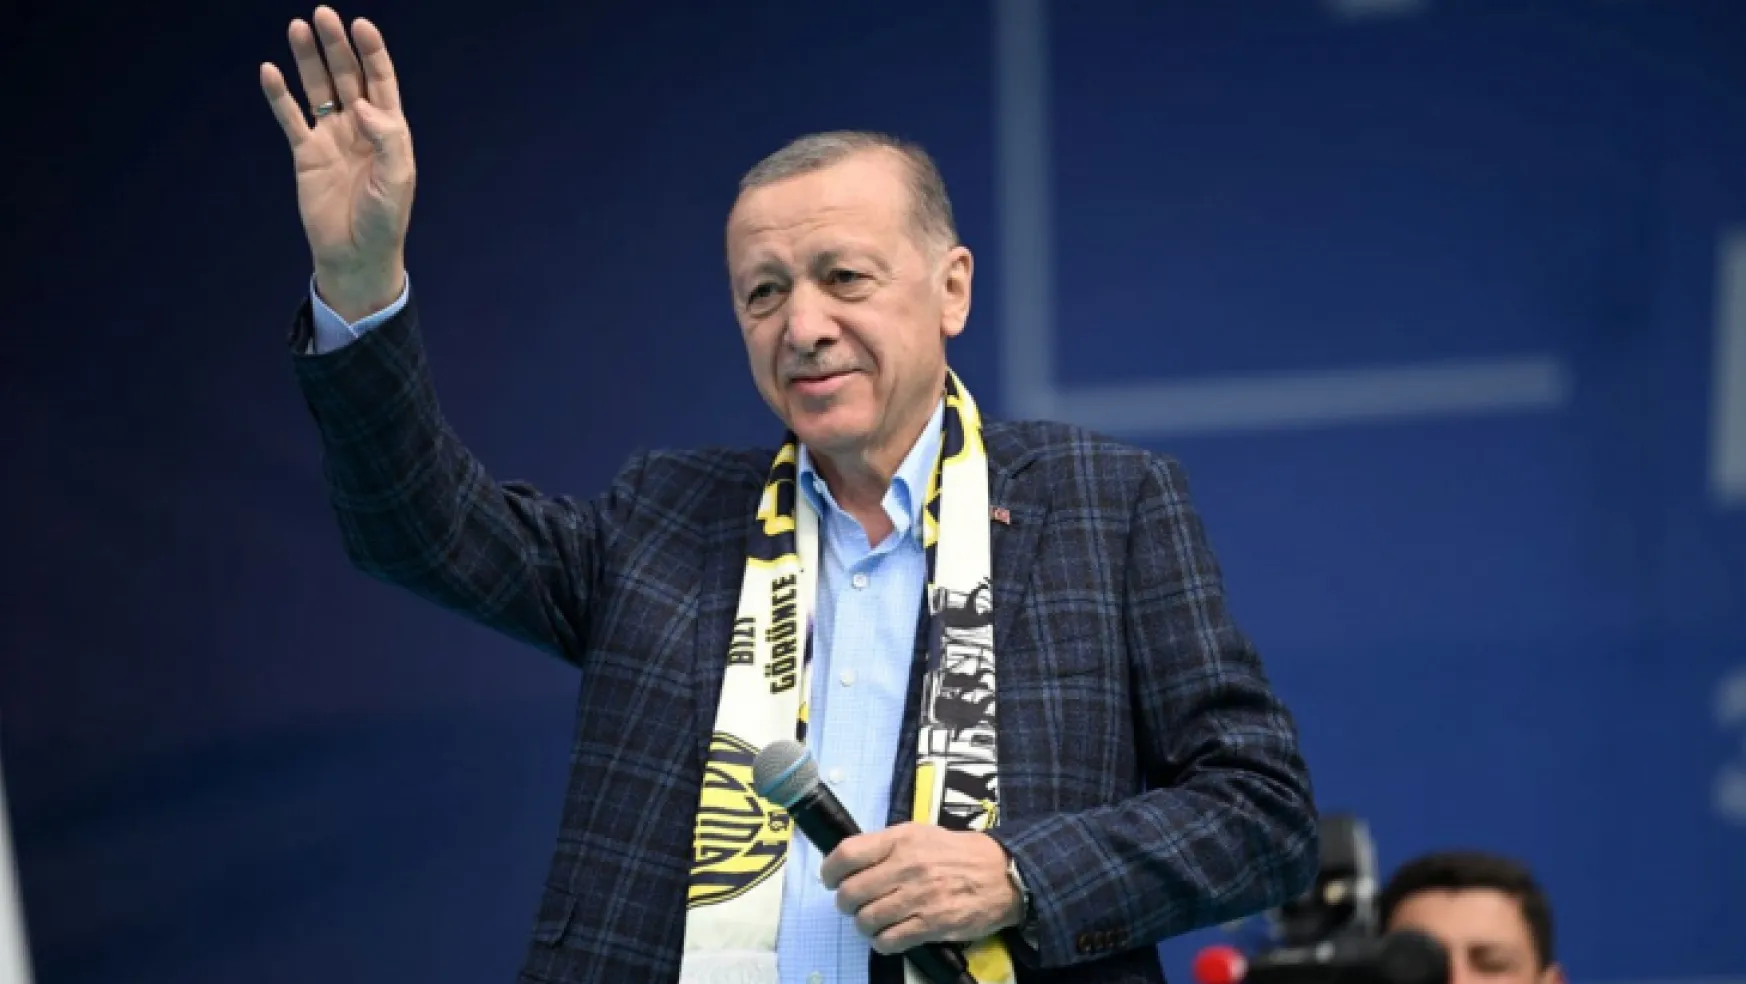 Cumhurbaşkanı Erdoğan'dan Kılıçdaroğlu'na 300 milyar dolar tepkisi